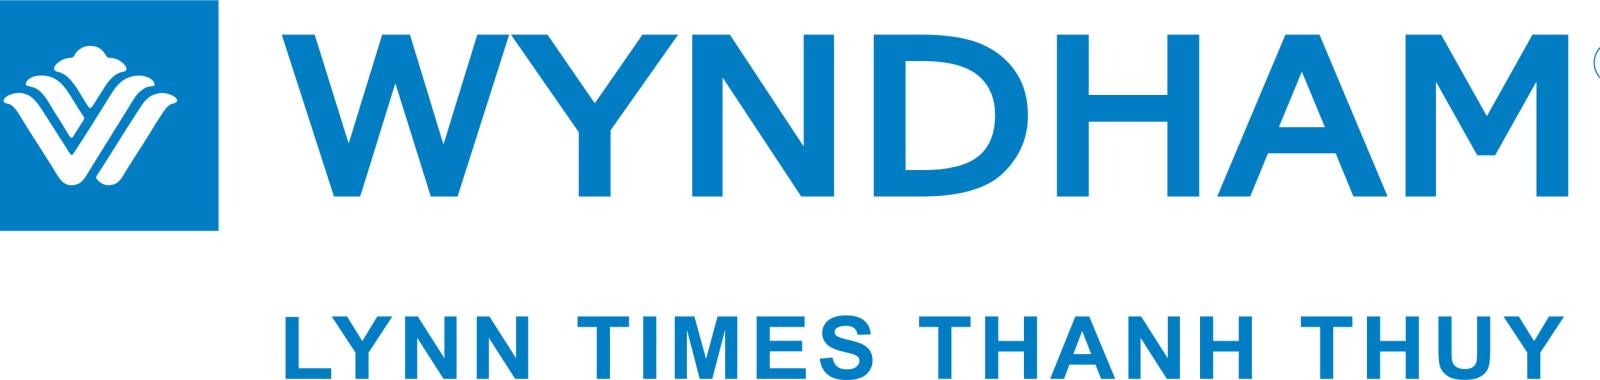 Logo dự án căn hộ khách sạn Wyndham Lynn Times Thanh Thuỷ